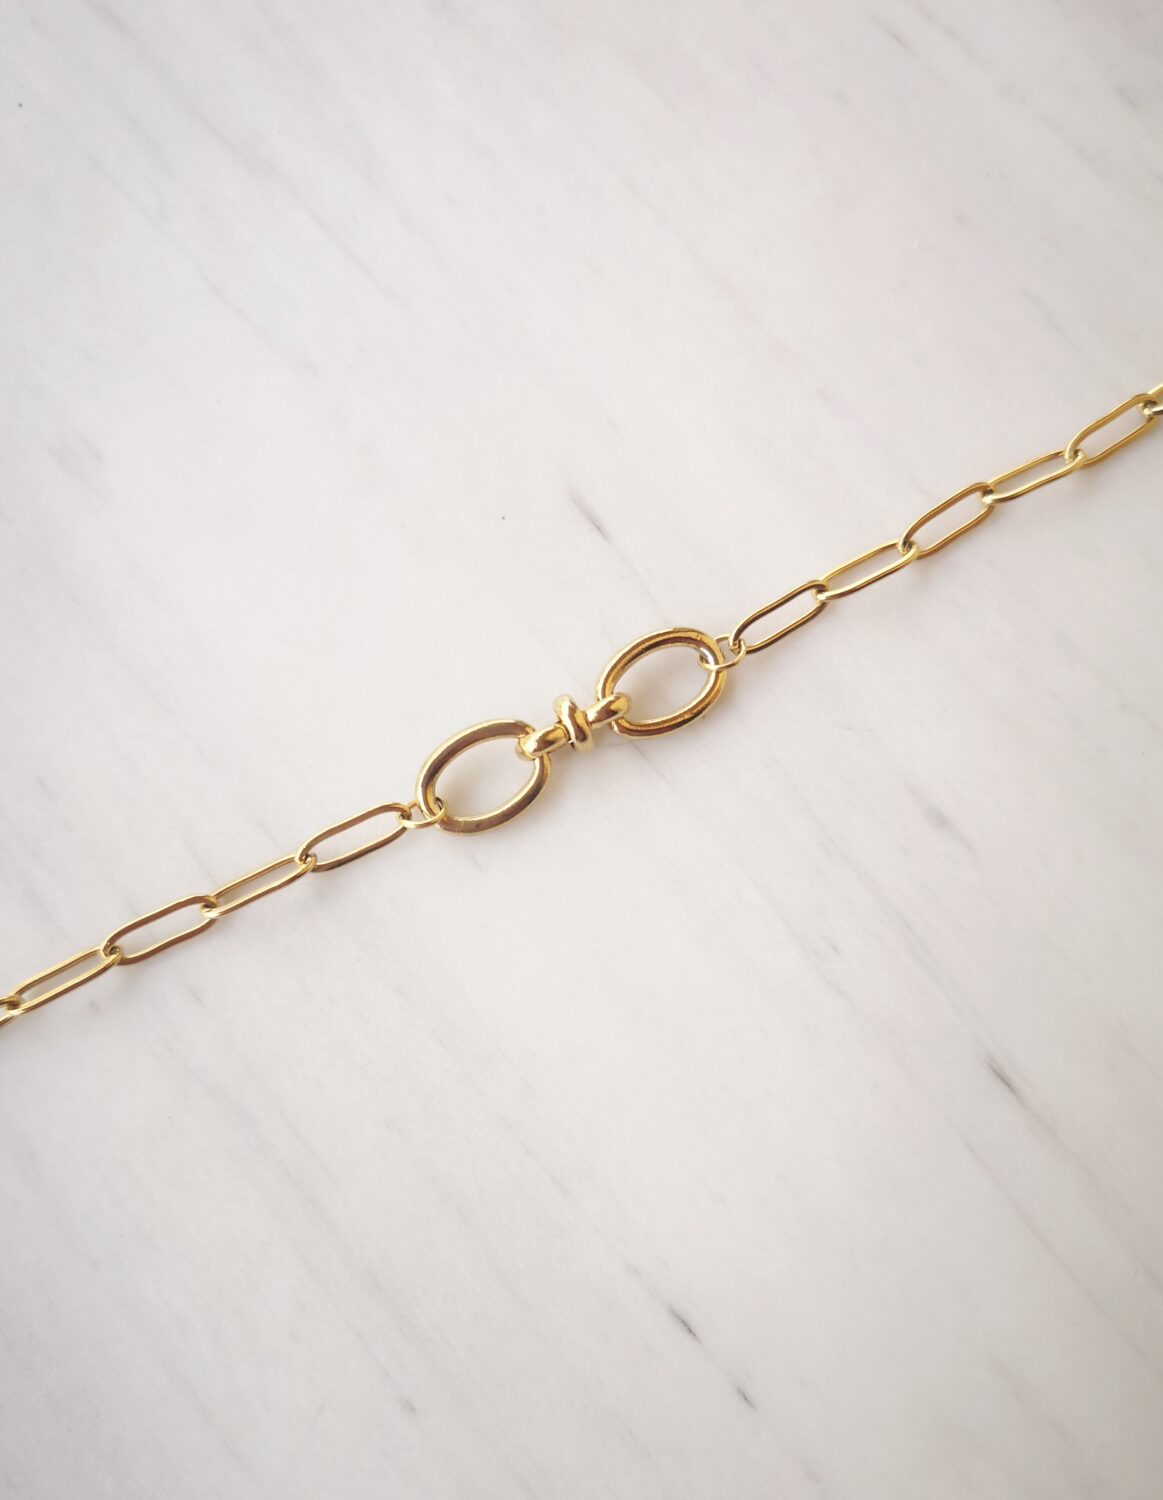 Double hook chain bracelet